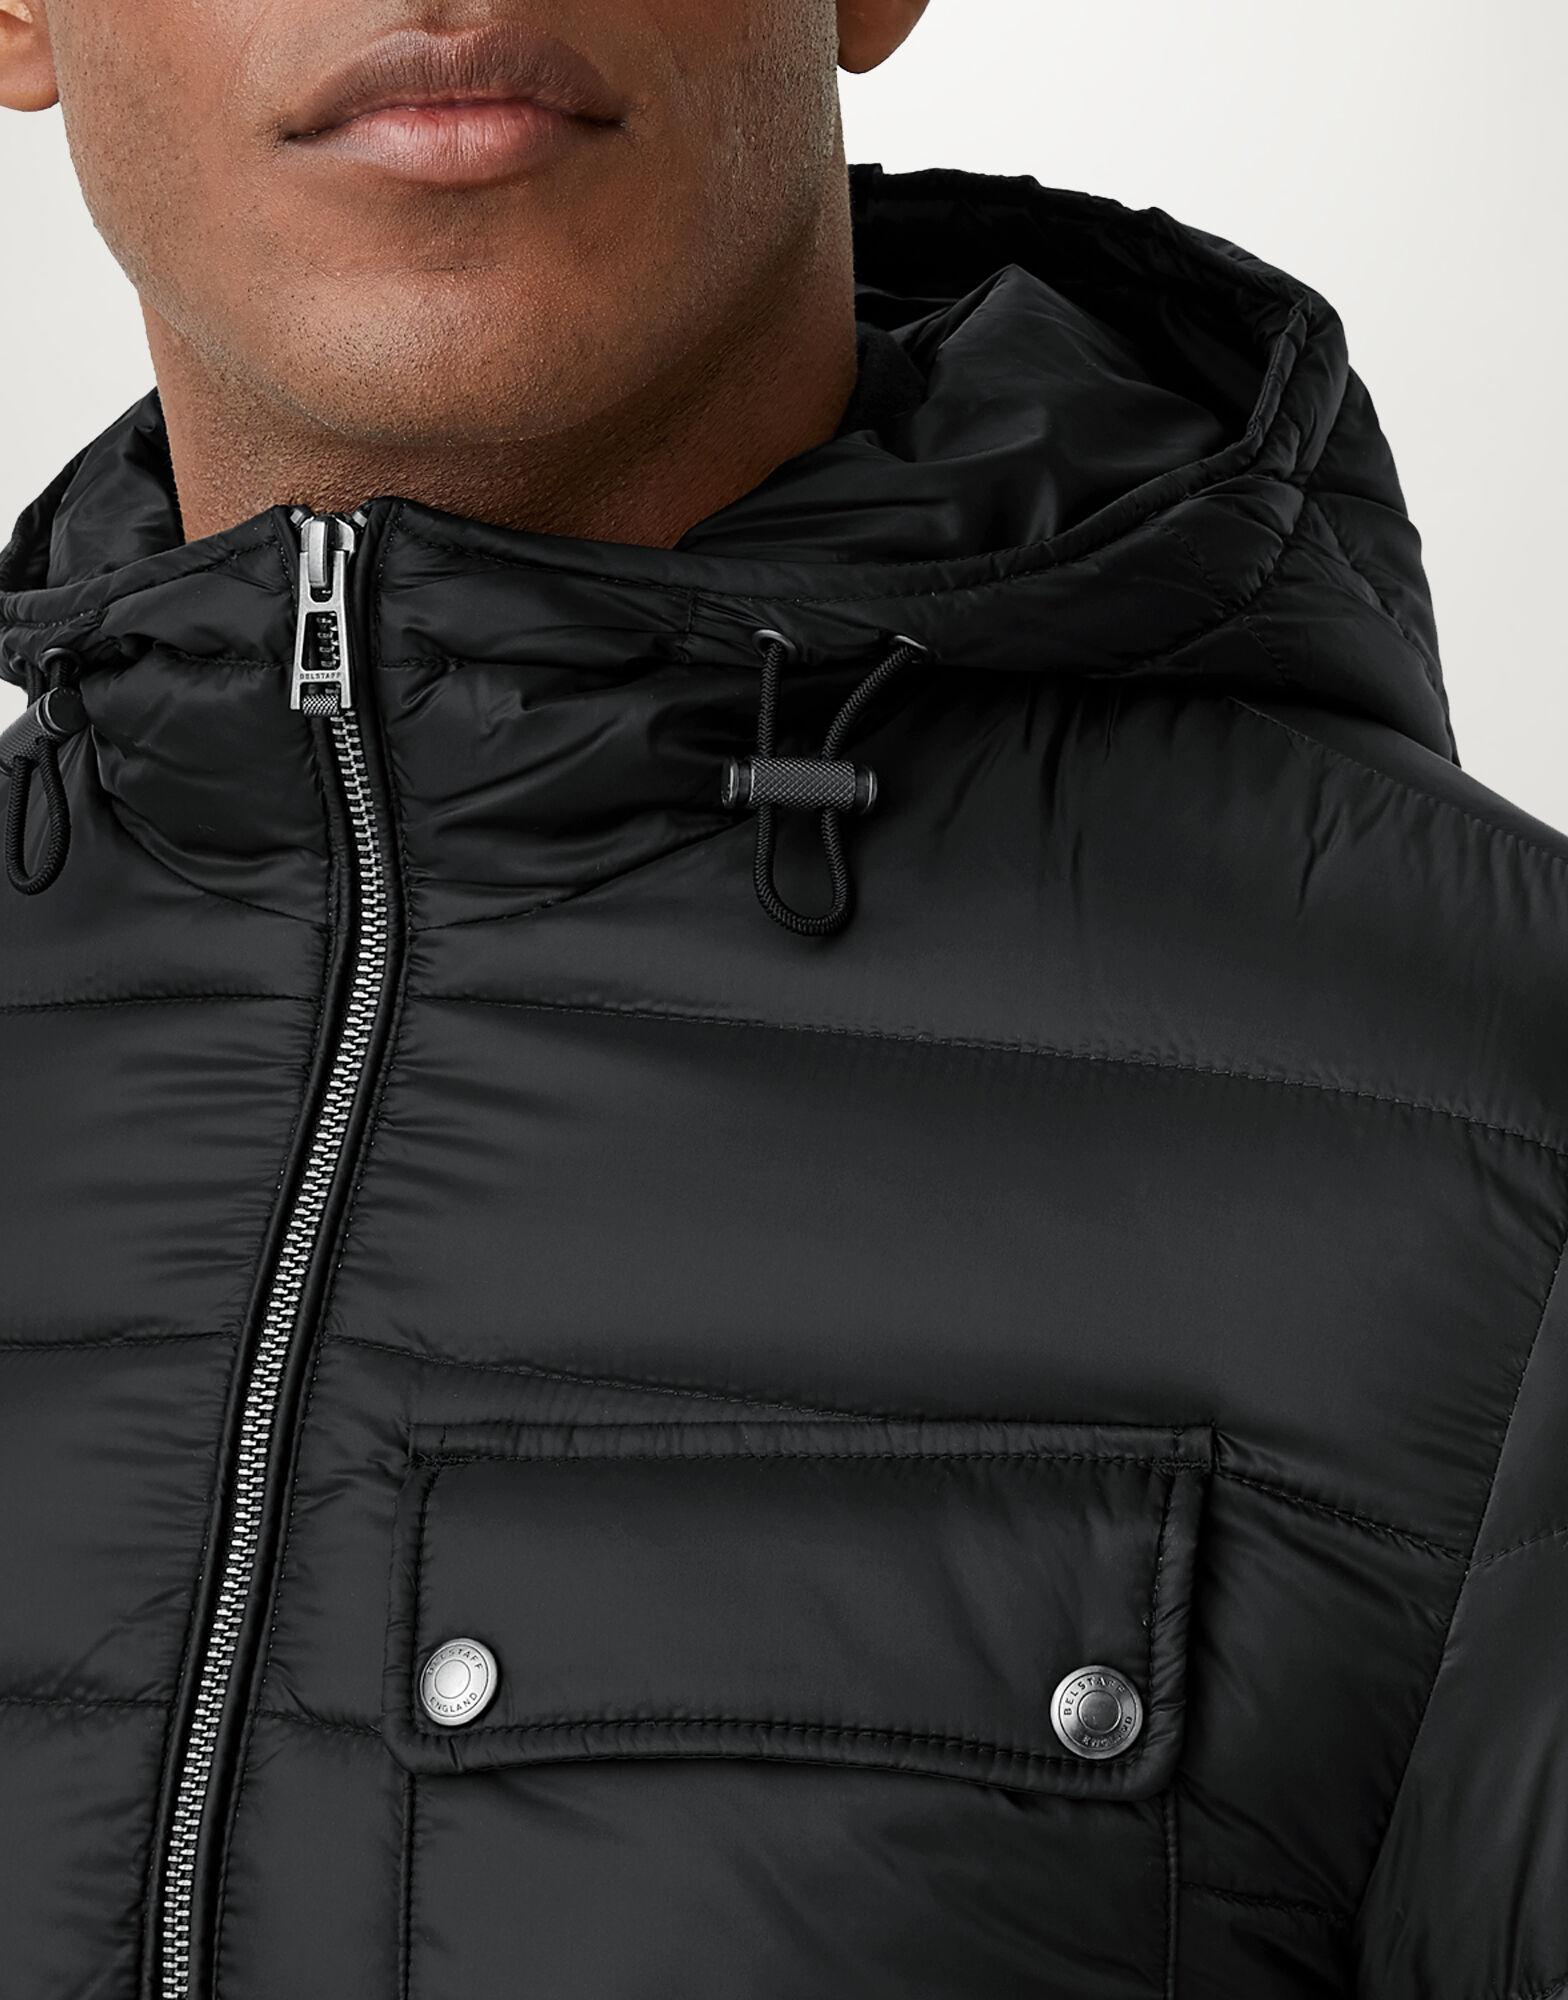 Belstaff Synthetic Streamline Jacket in Black for Men - Lyst